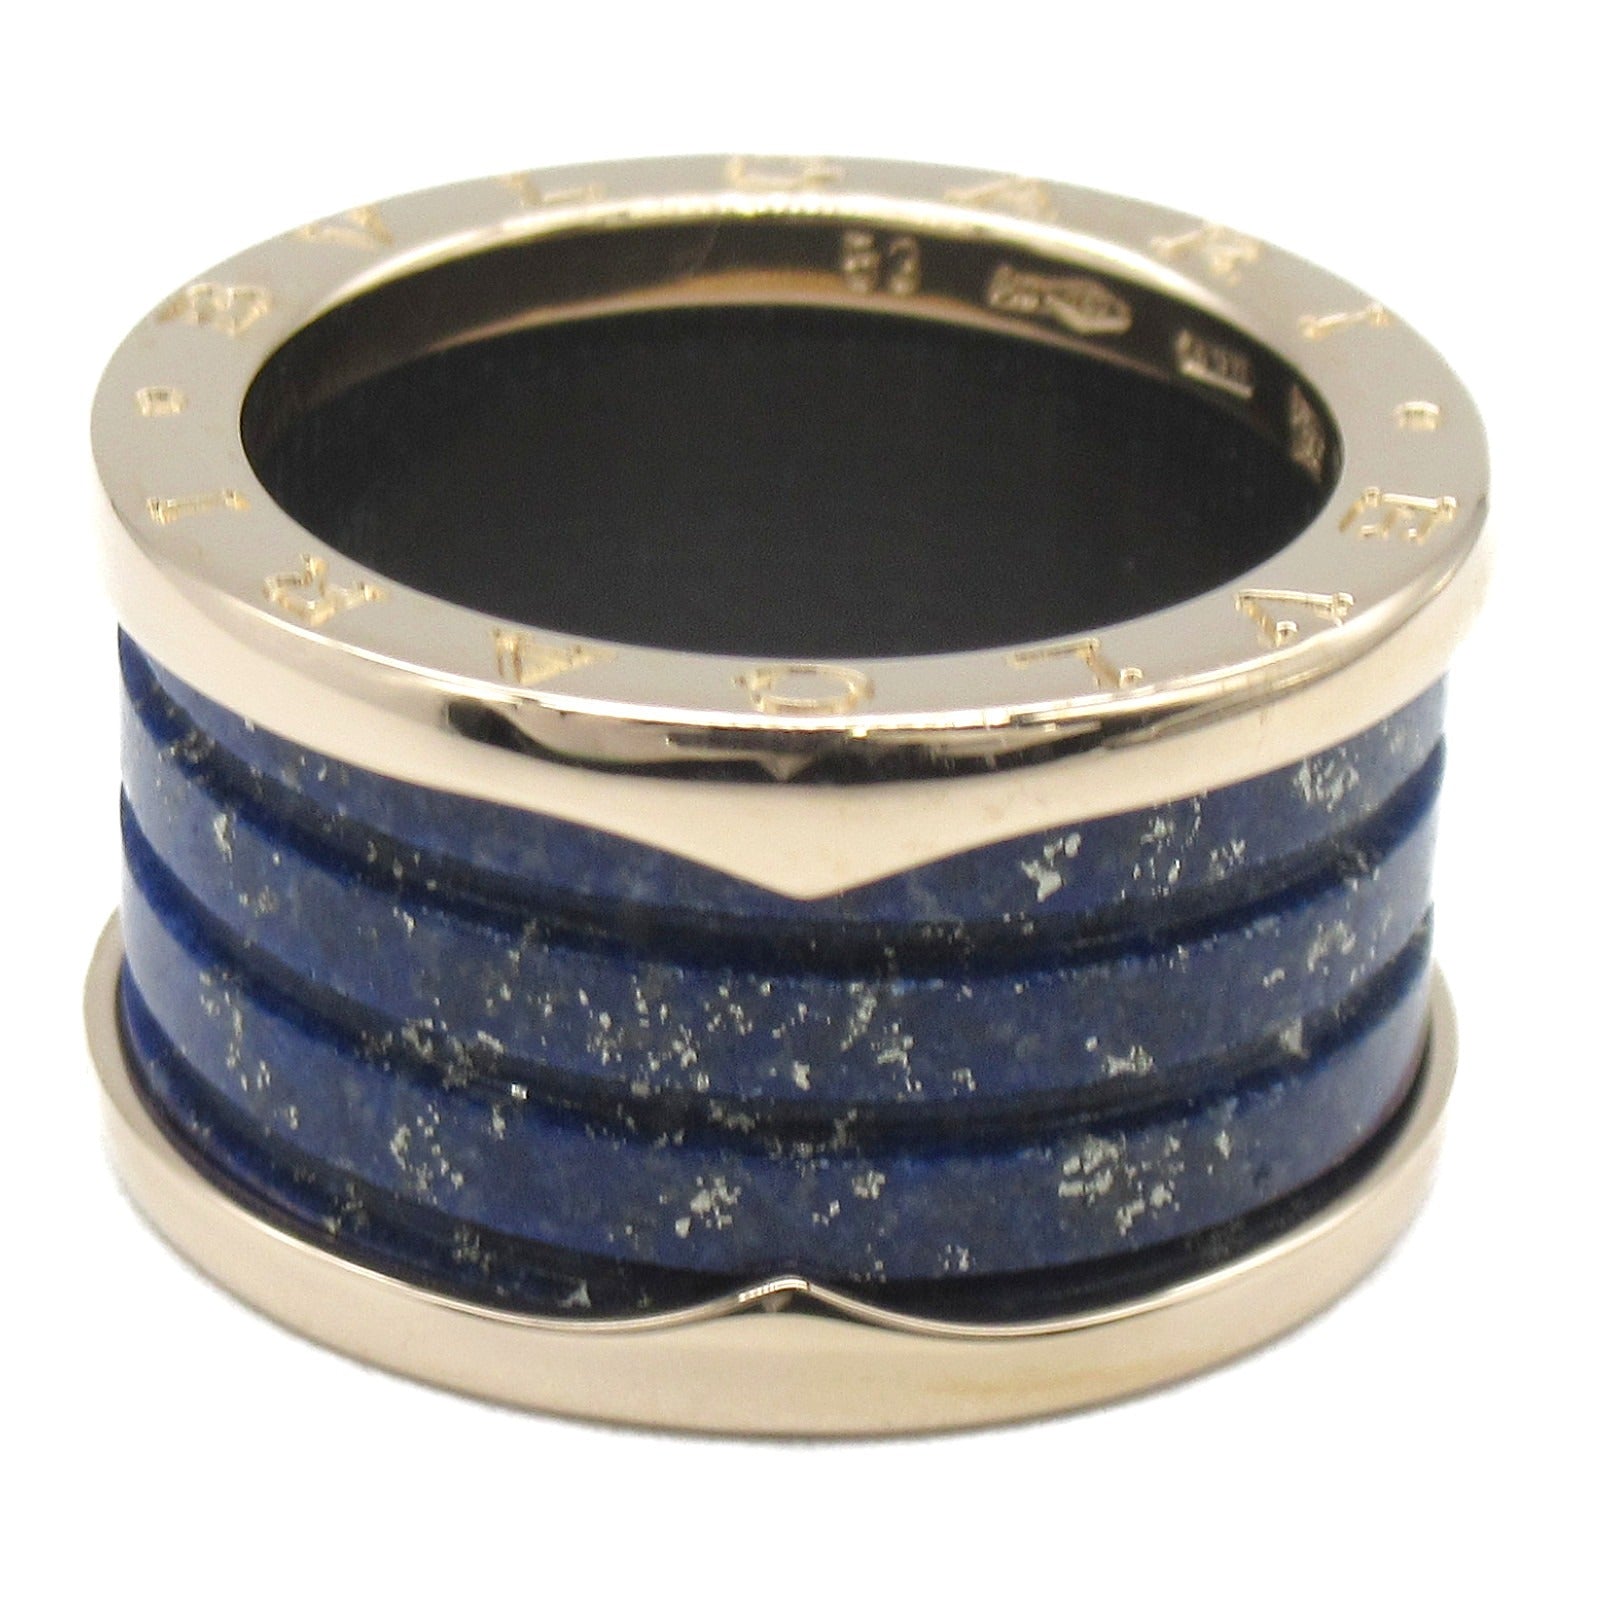 Bulgari BVLGARI B-zero1 Beezero One Marble Ring Ring Ring Jewelry K18PG (Pink G) Rapislasli   Blue